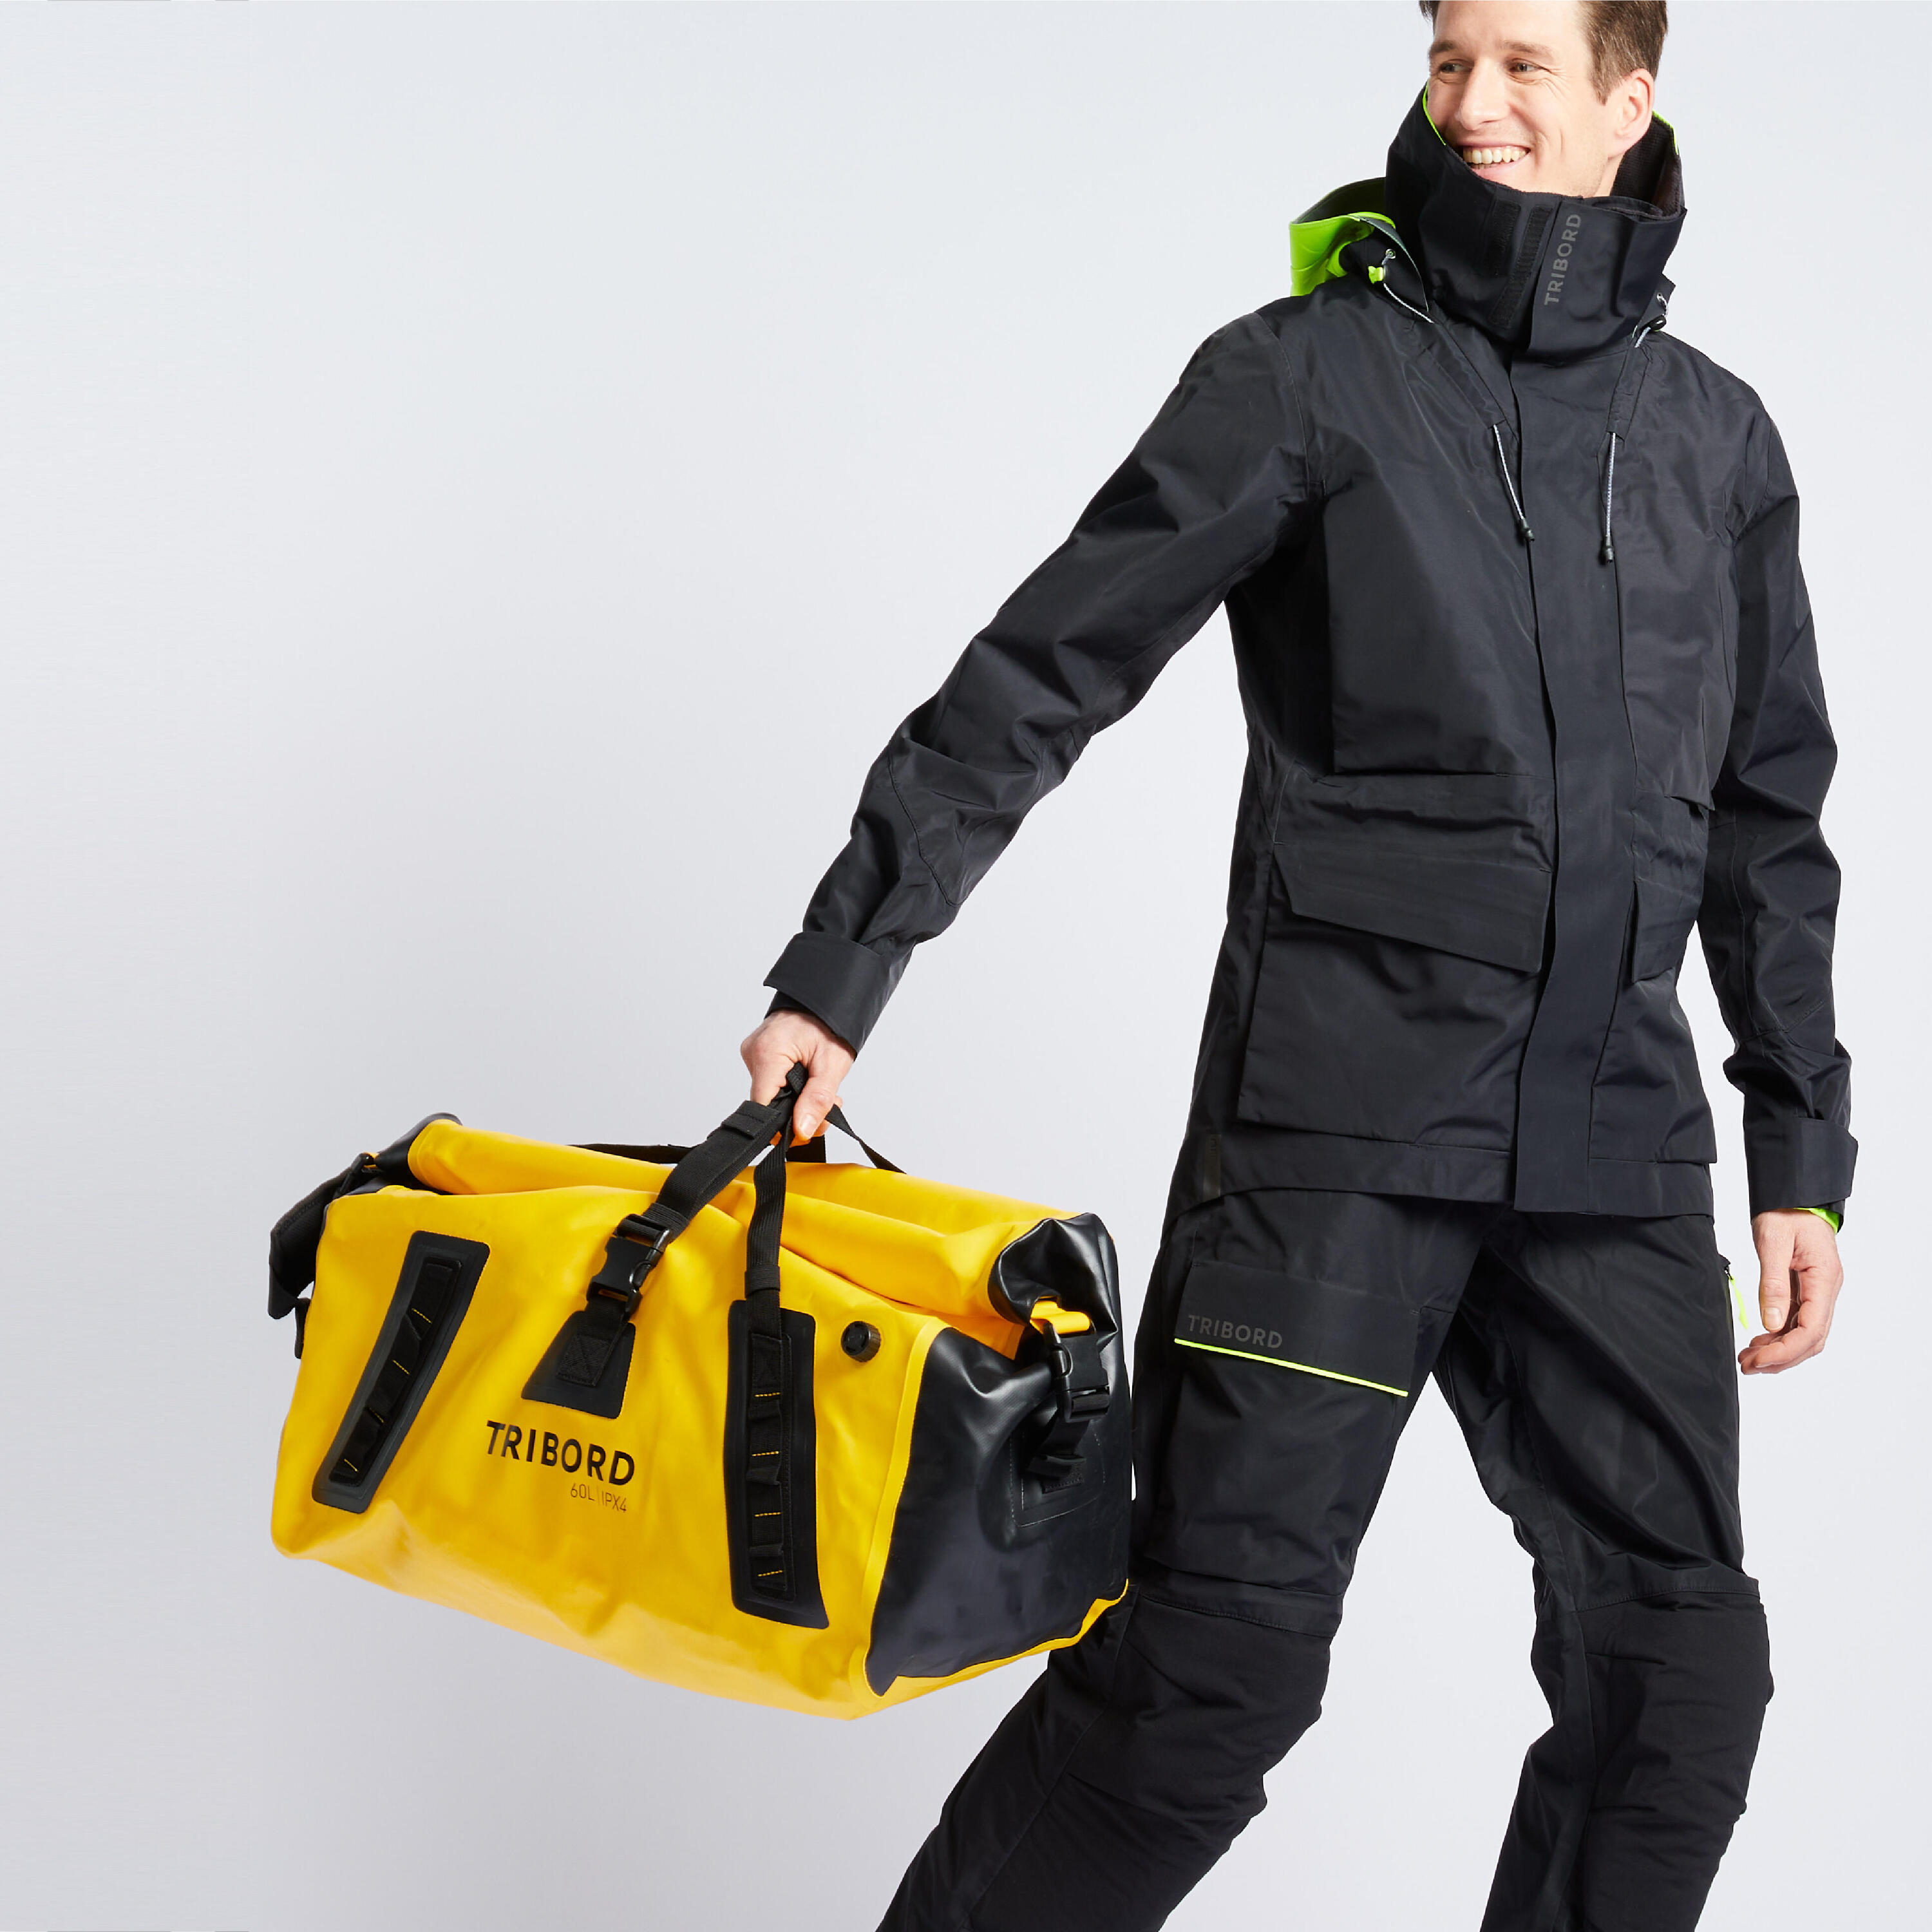 Waterproof duffle bag - travel bag 60 L yellow black 2/5